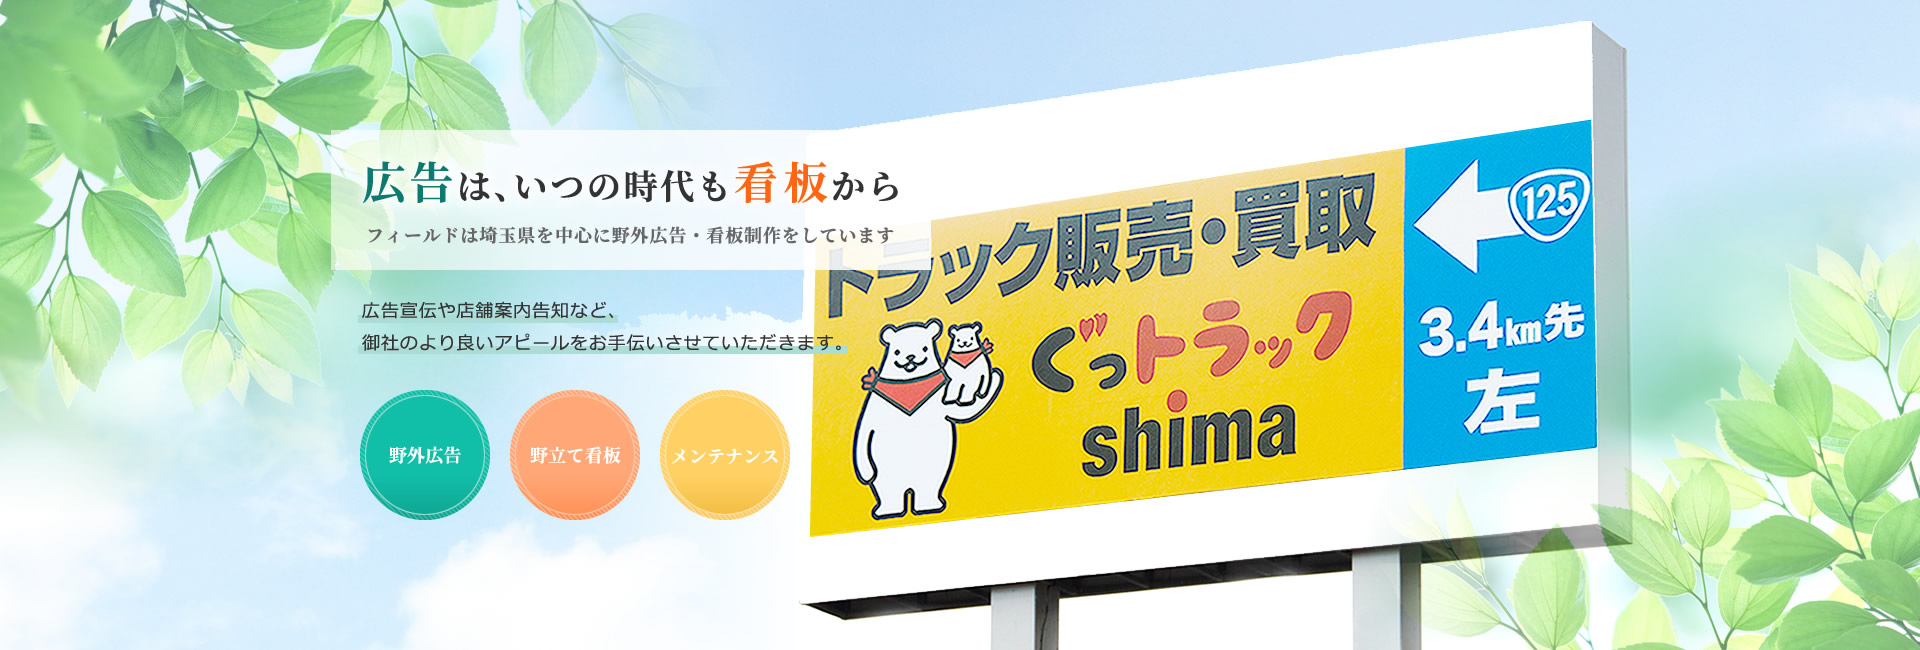 野立て看板・屋外広告は埼玉県の株式会社フィールド | さいたま市